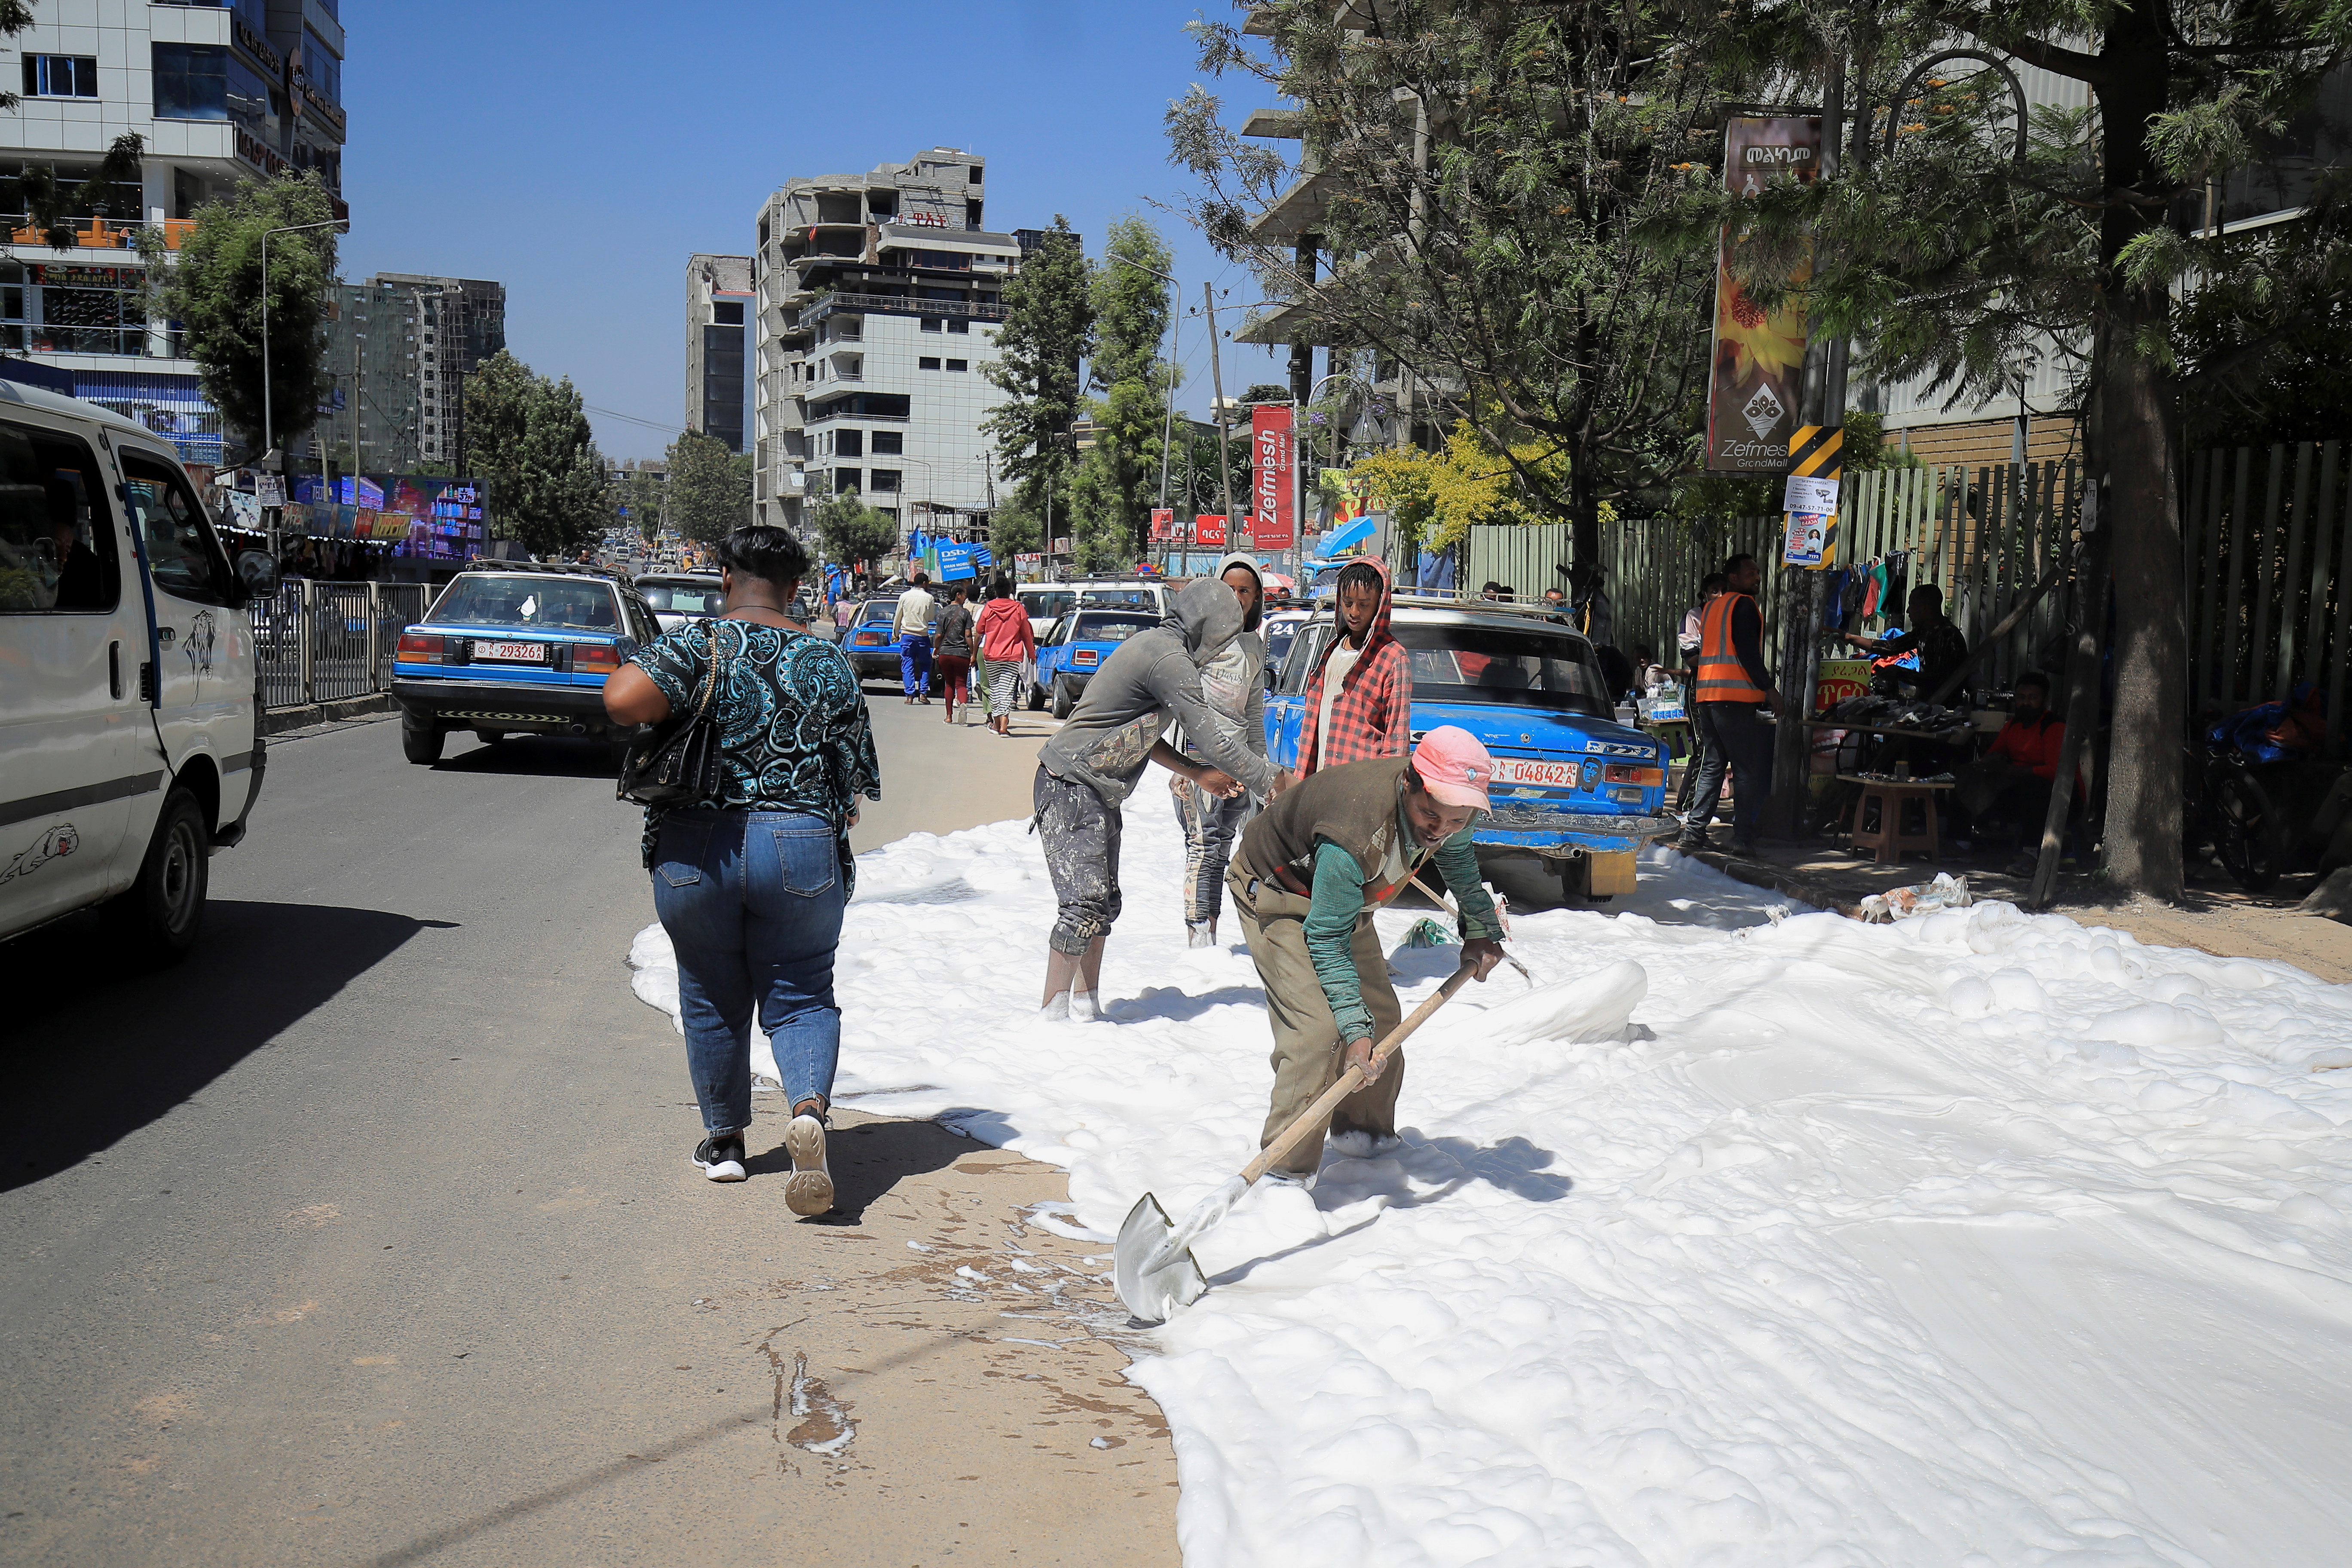 People clean a street in Megenagna neighbourhood in Addis Ababa, Ethiopia November 3, 2021. REUTERS/Tiksa Negeri